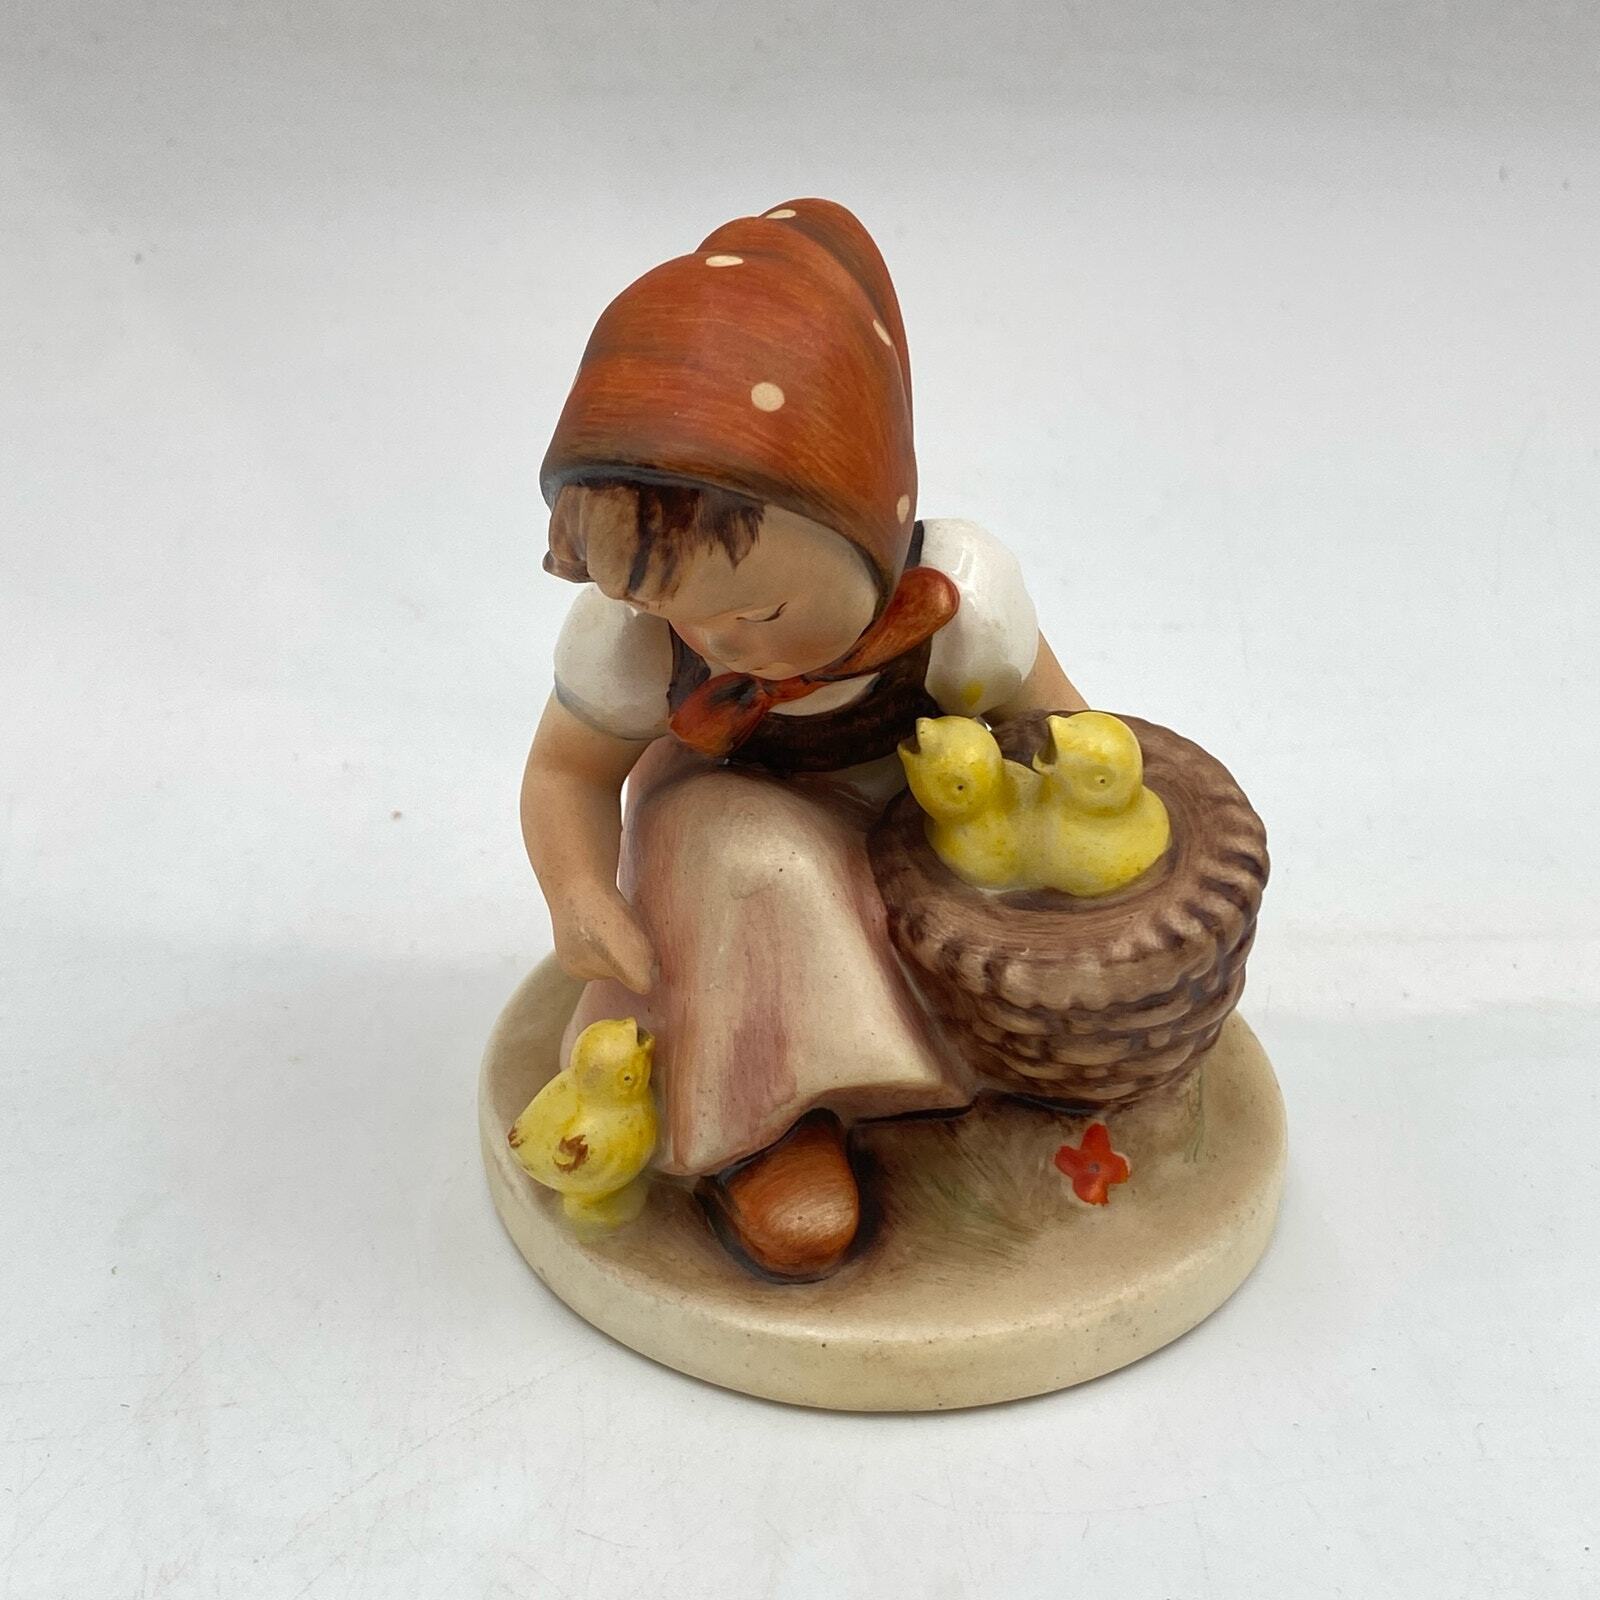 Vintage Goebel Hummel Chick Girl Figurine 57/0 Germany, original Hummel figurine